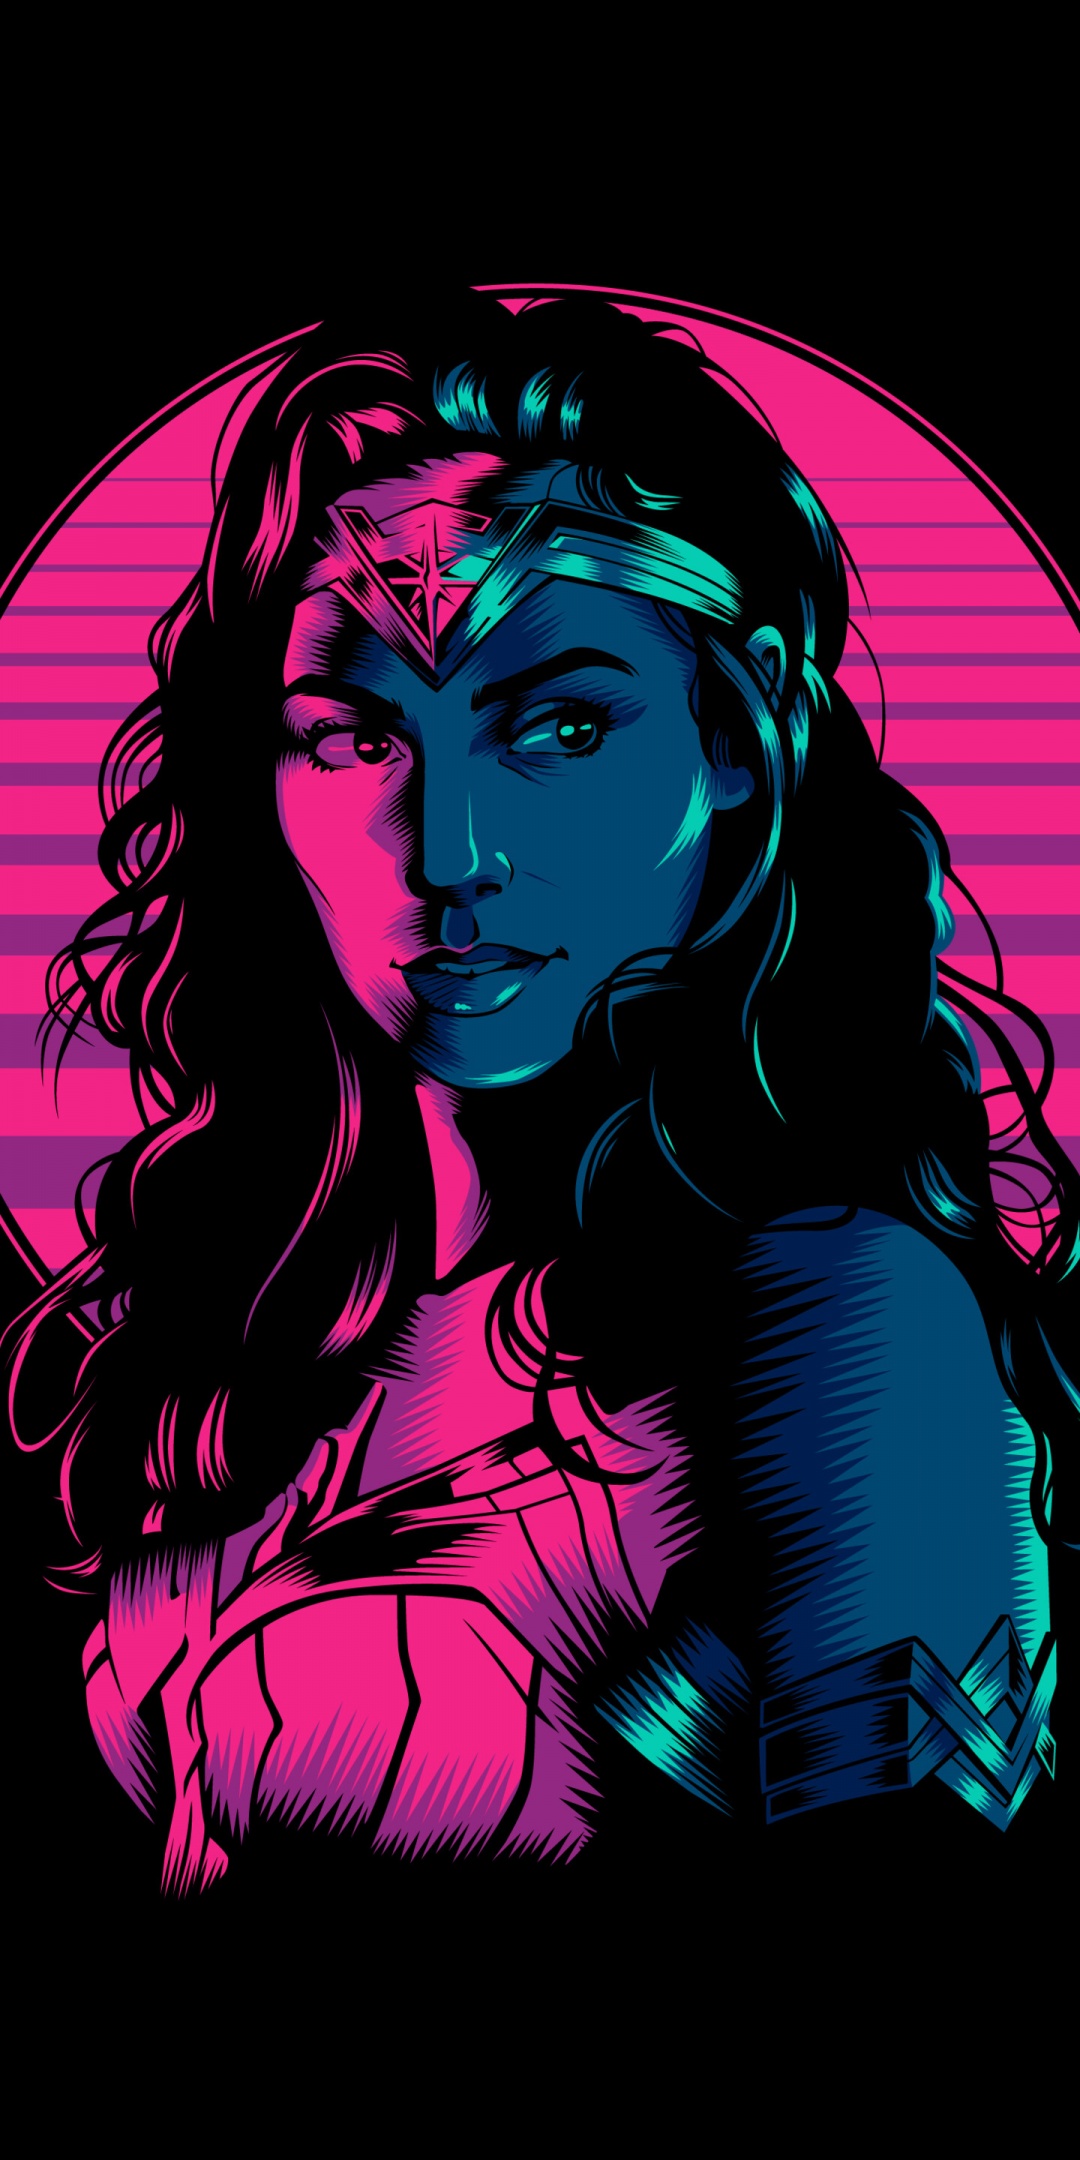 Wonder Woman 1984 4K Wallpaper, Wonder Woman, Fan art, Black background